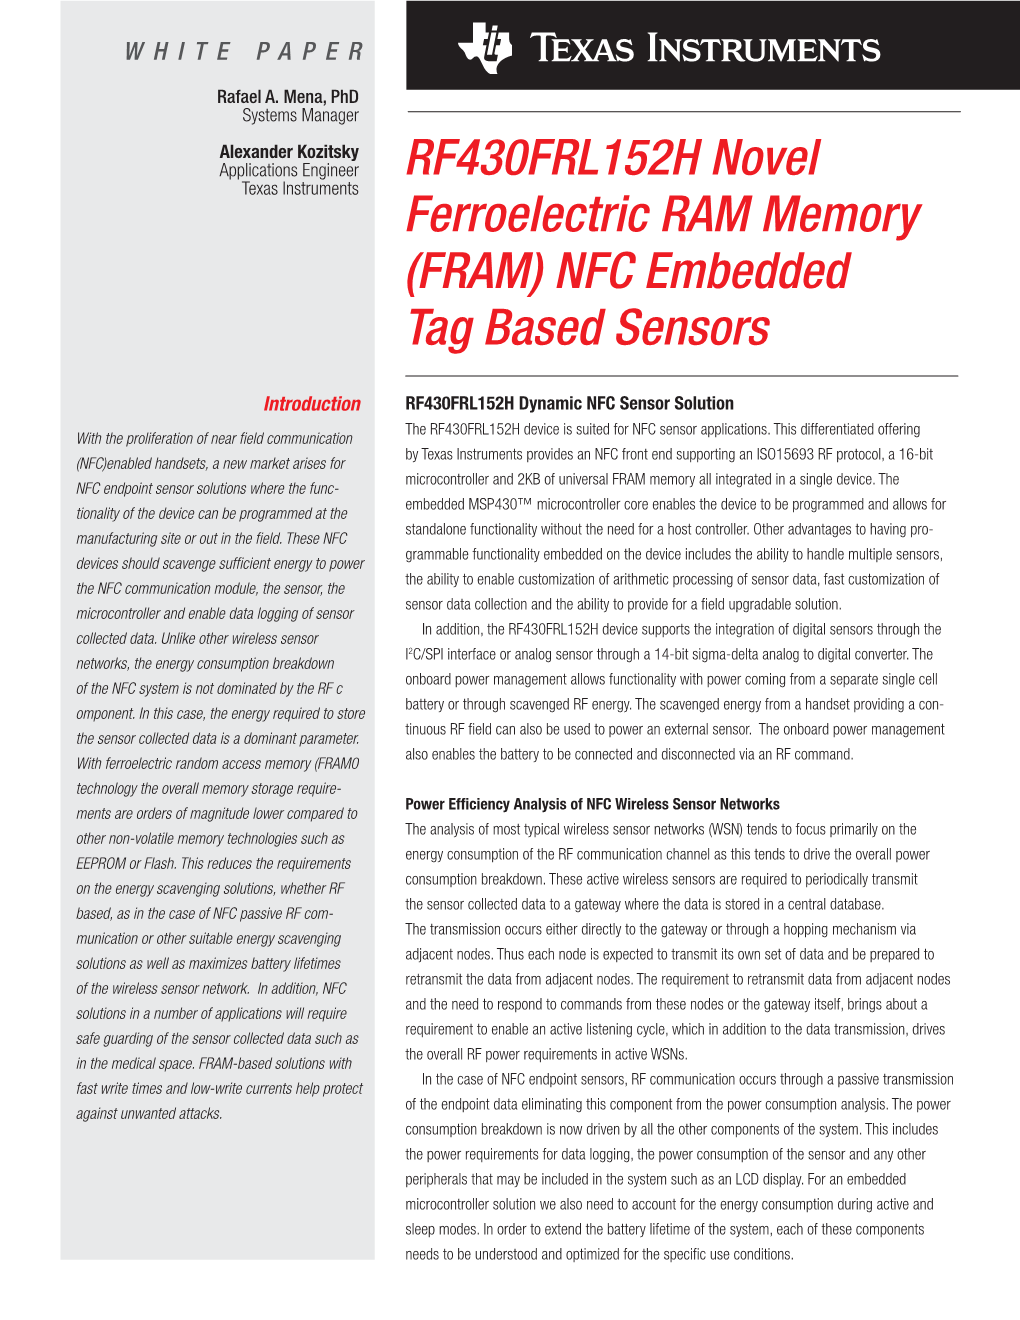 RF430FRL152H Novel Ferroelectric RAM Memory NFC Embedded Tag Based Sensors